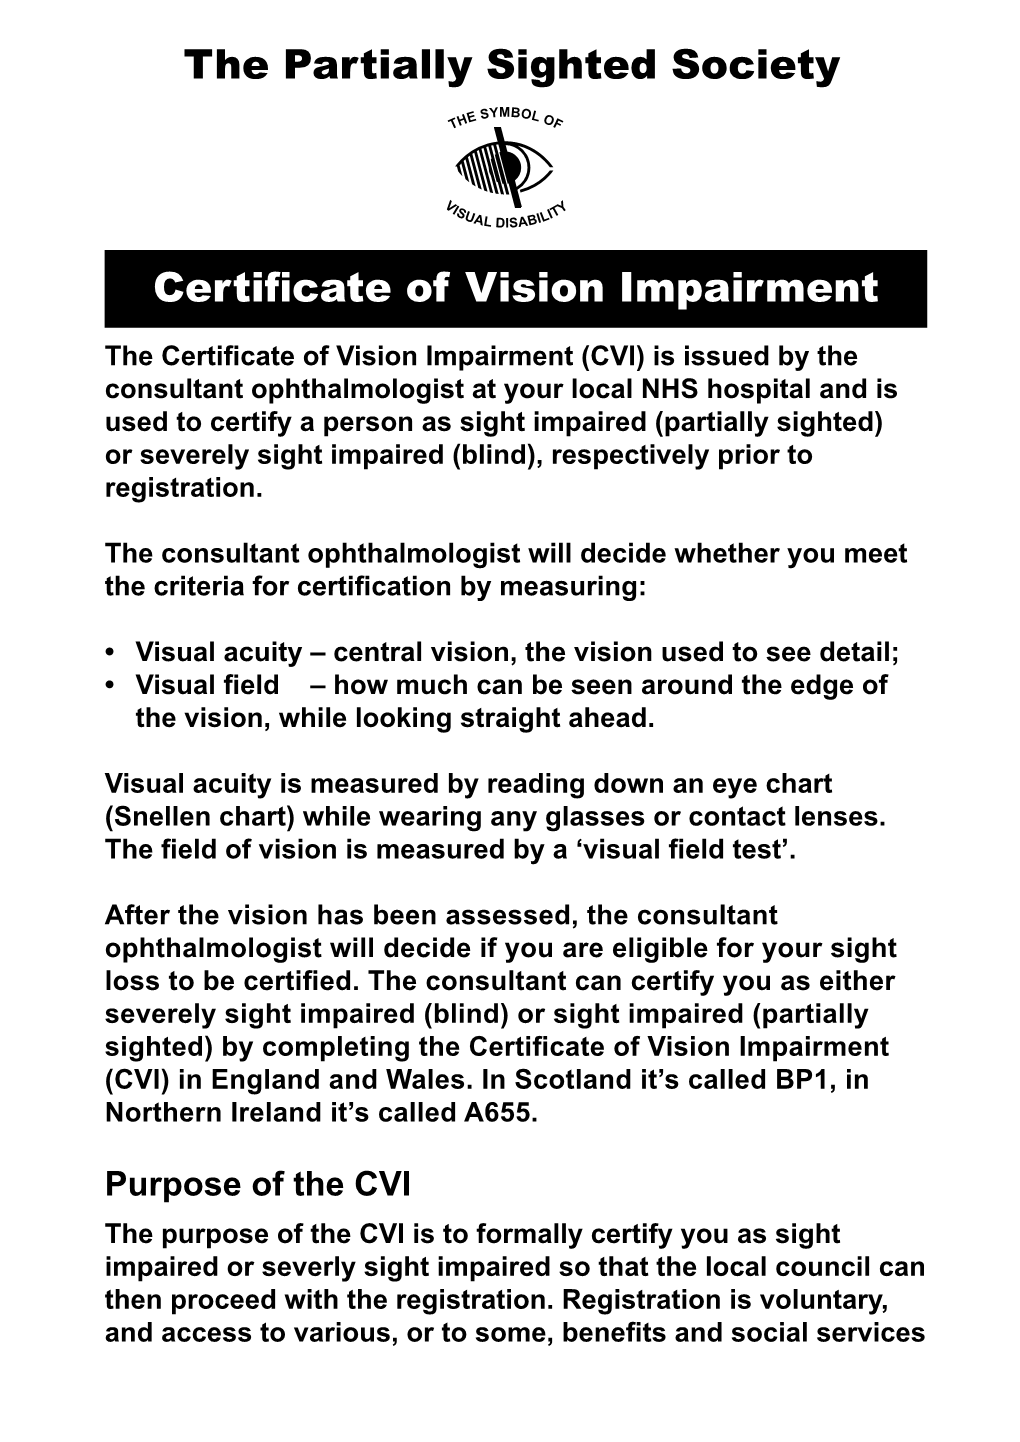 Certificate of Visual Impairment